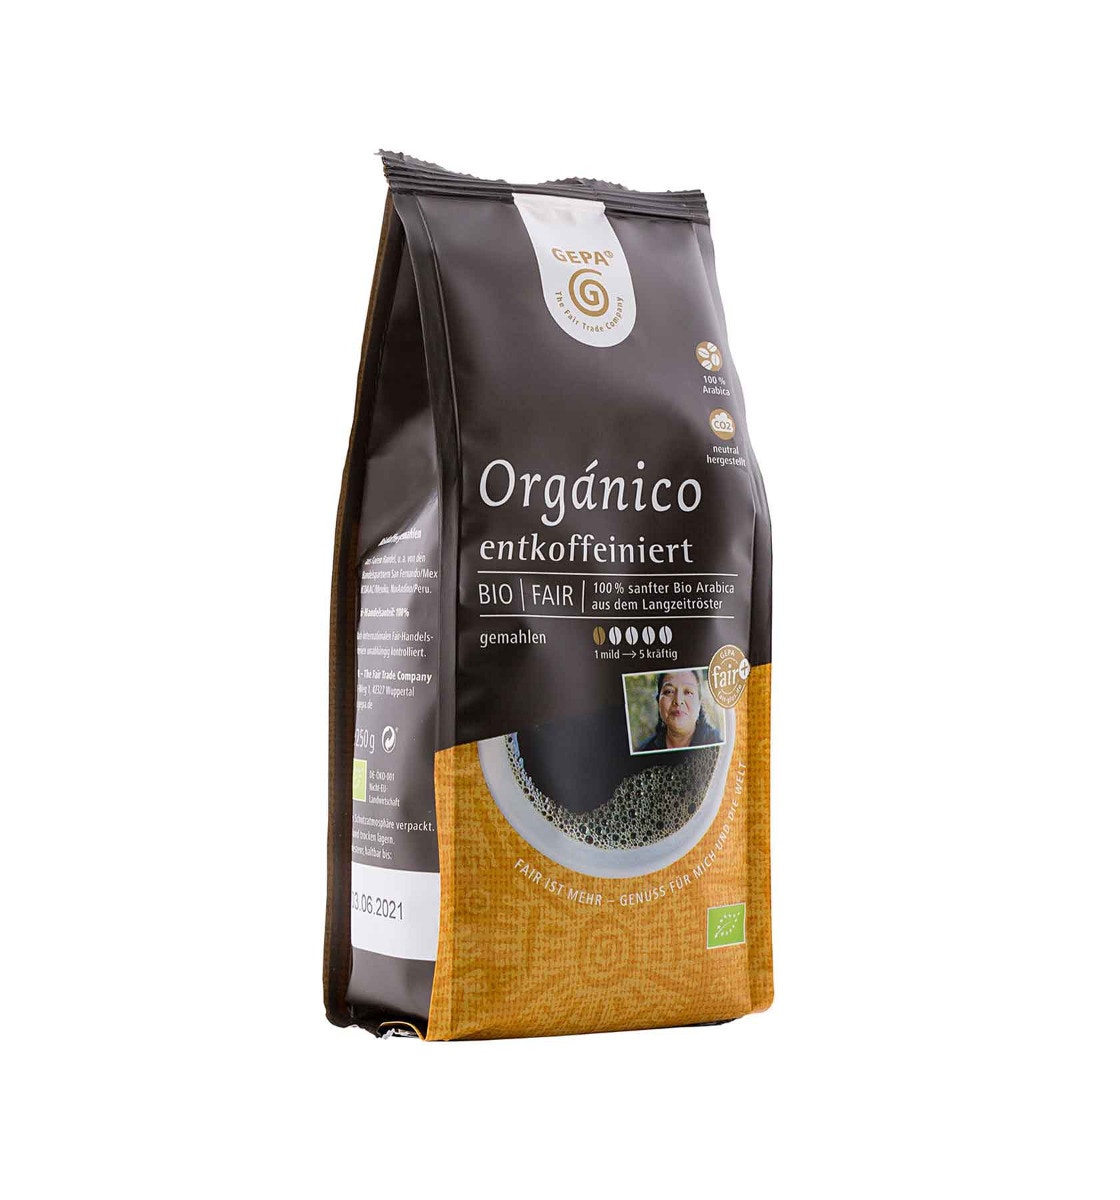 Bio Café Orgánico entkoffeiniert 250g, gemahlen von GEPA